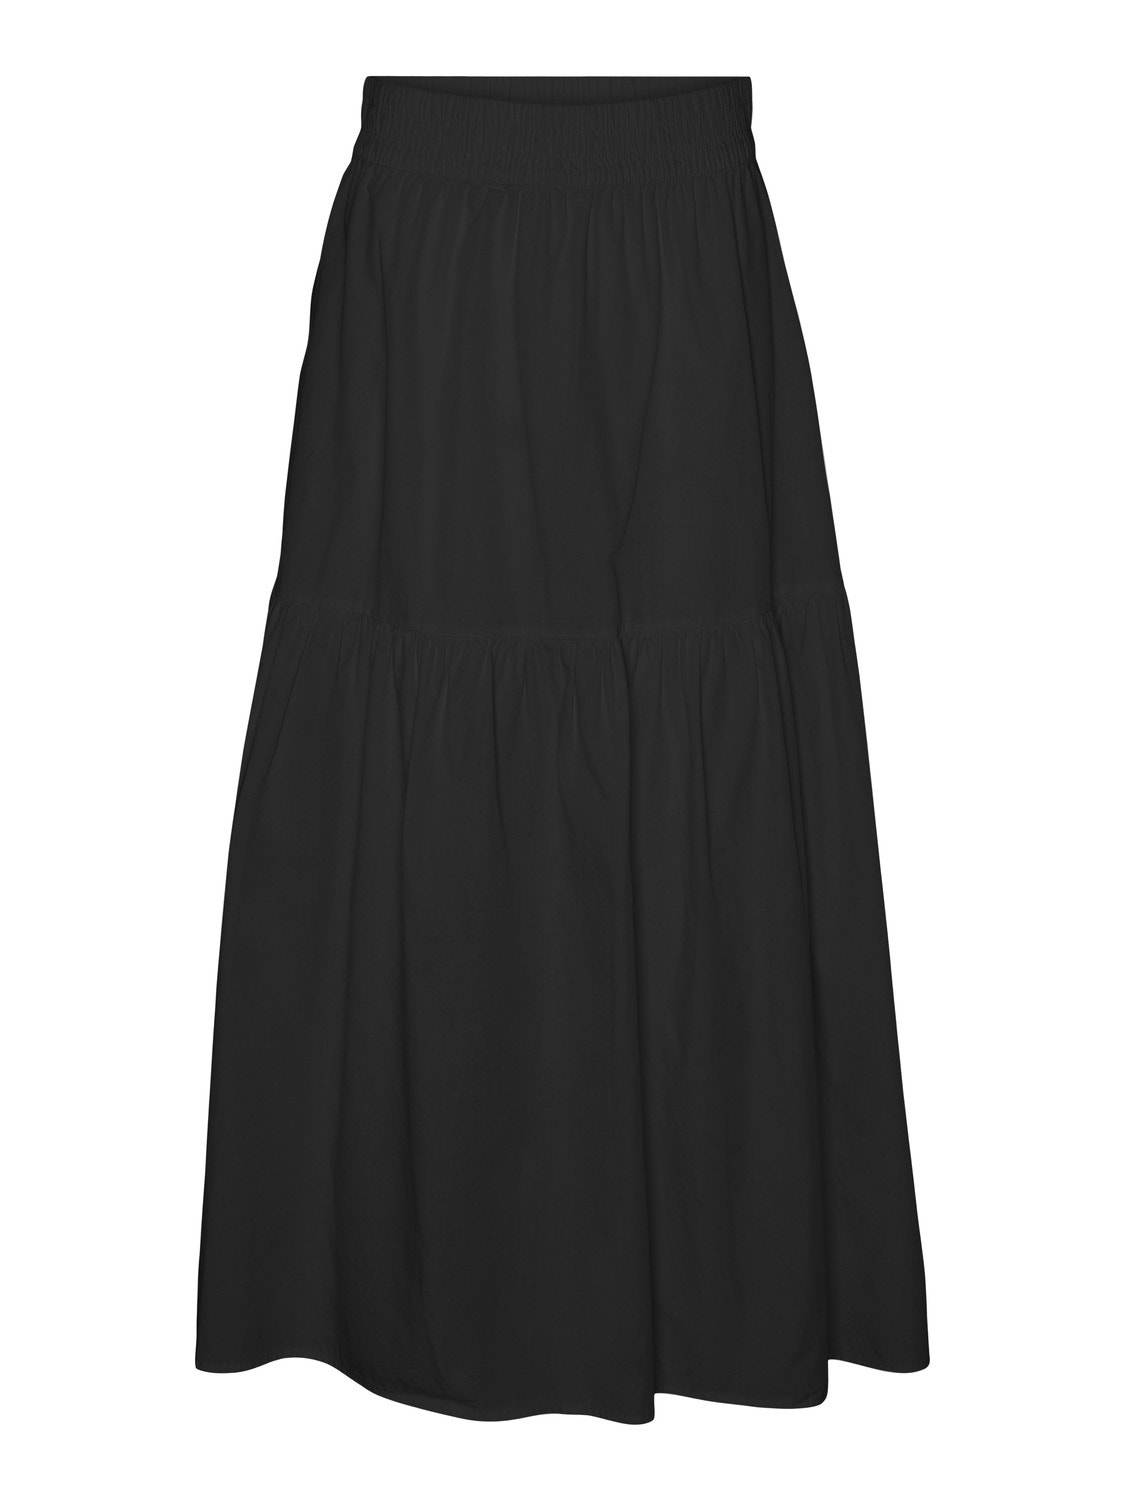 Vero Moda VMCHARLOTTE Long skirt -Black - 10303657